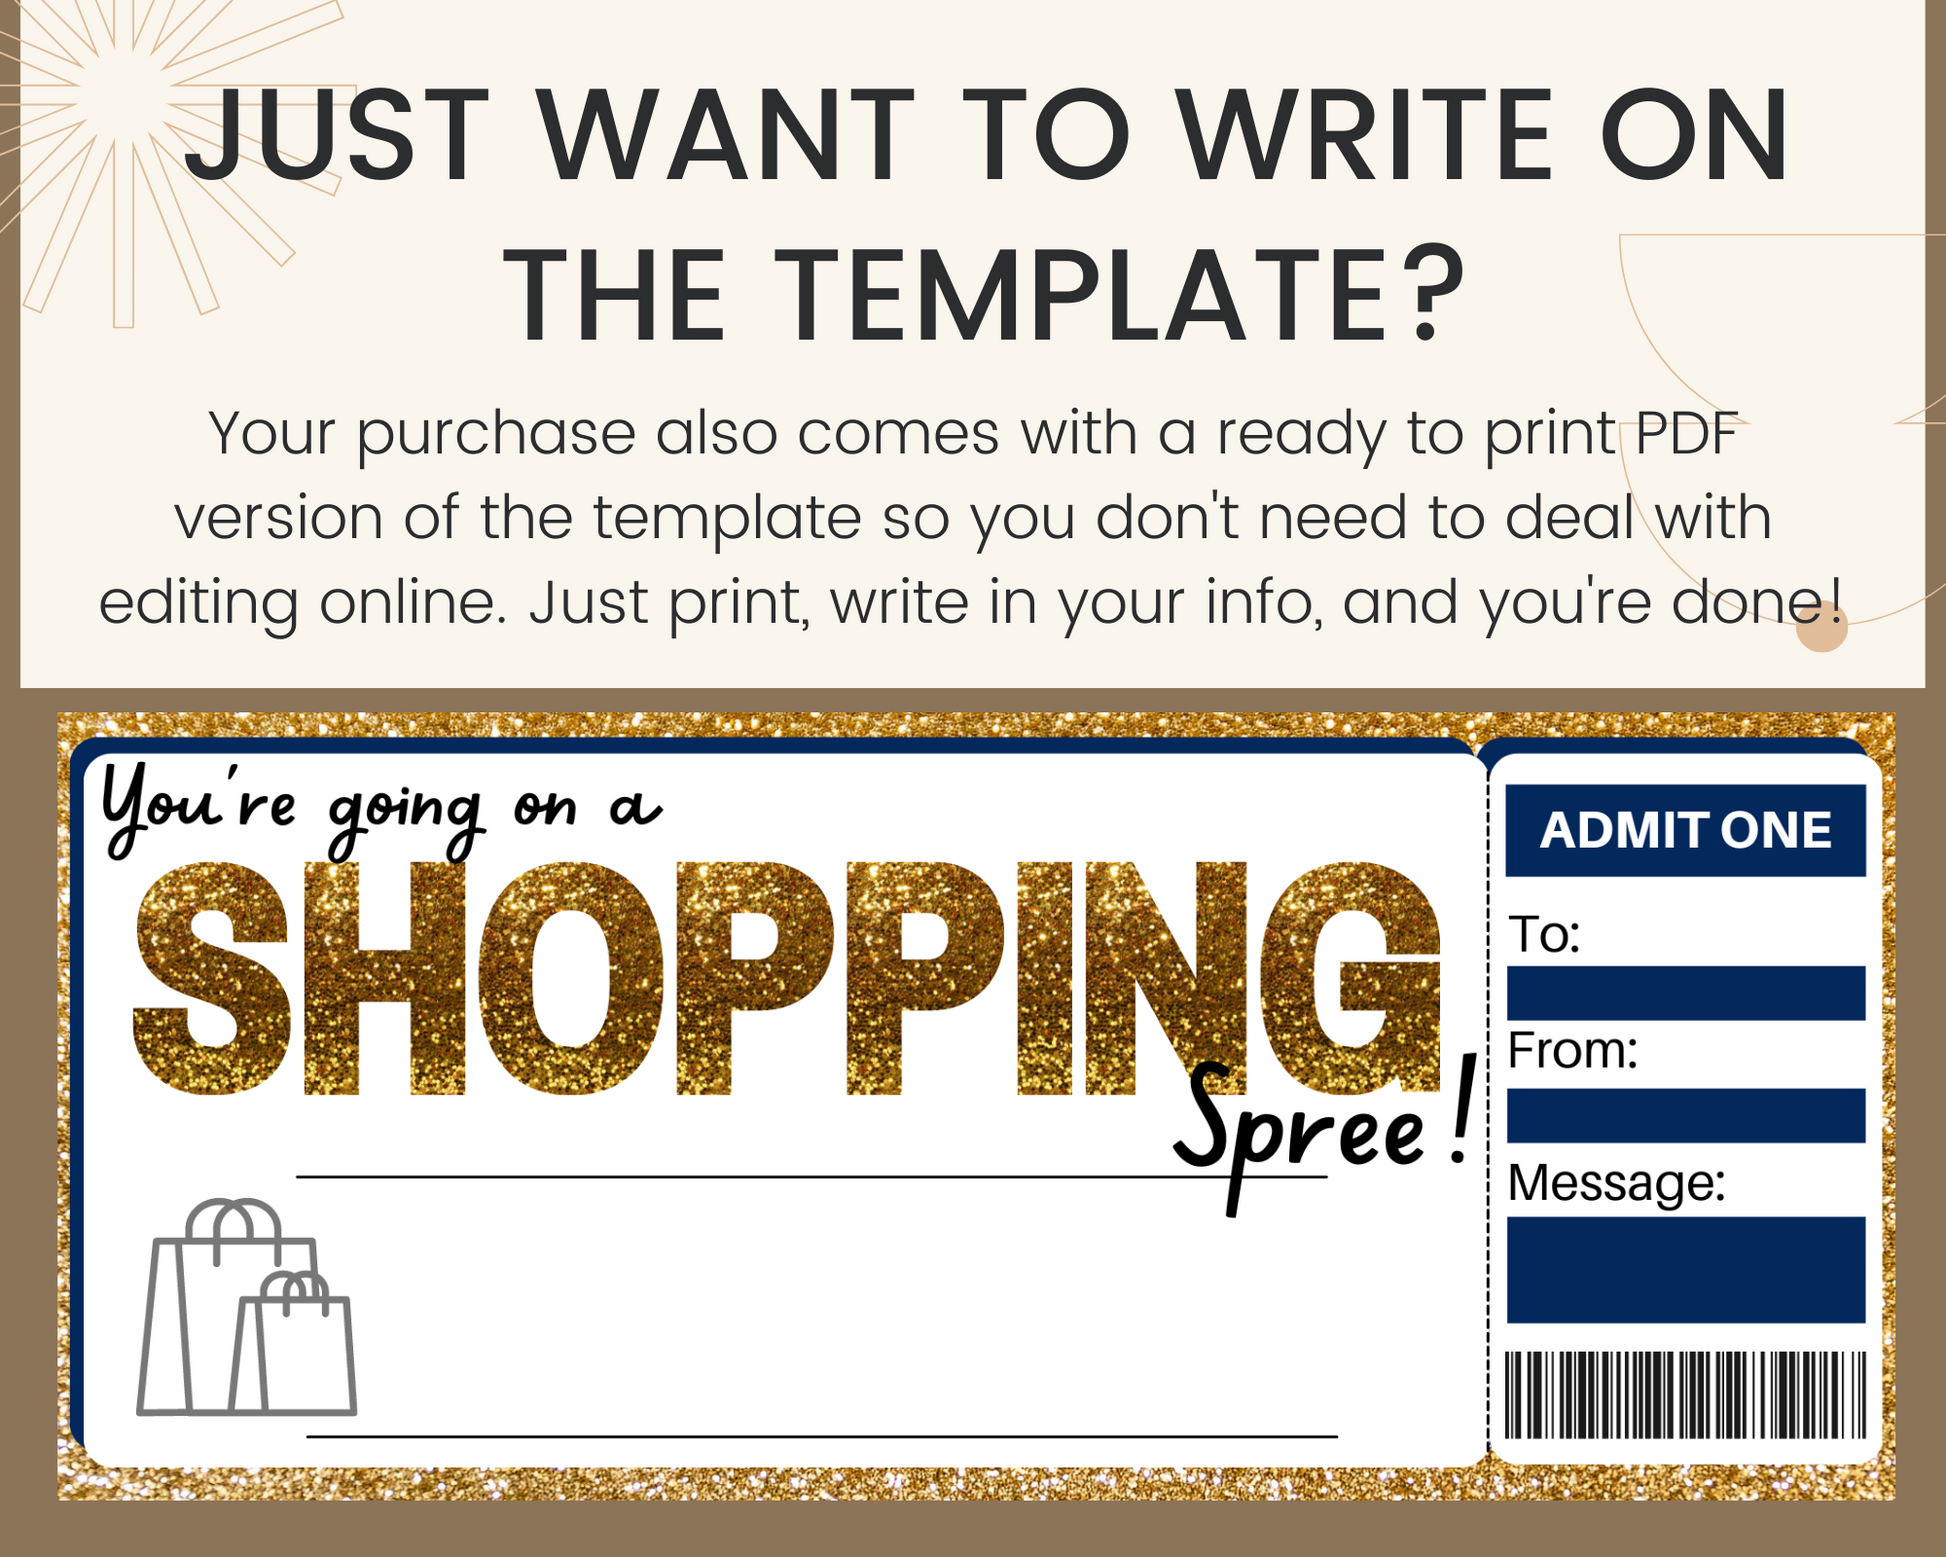 certificate template pdf